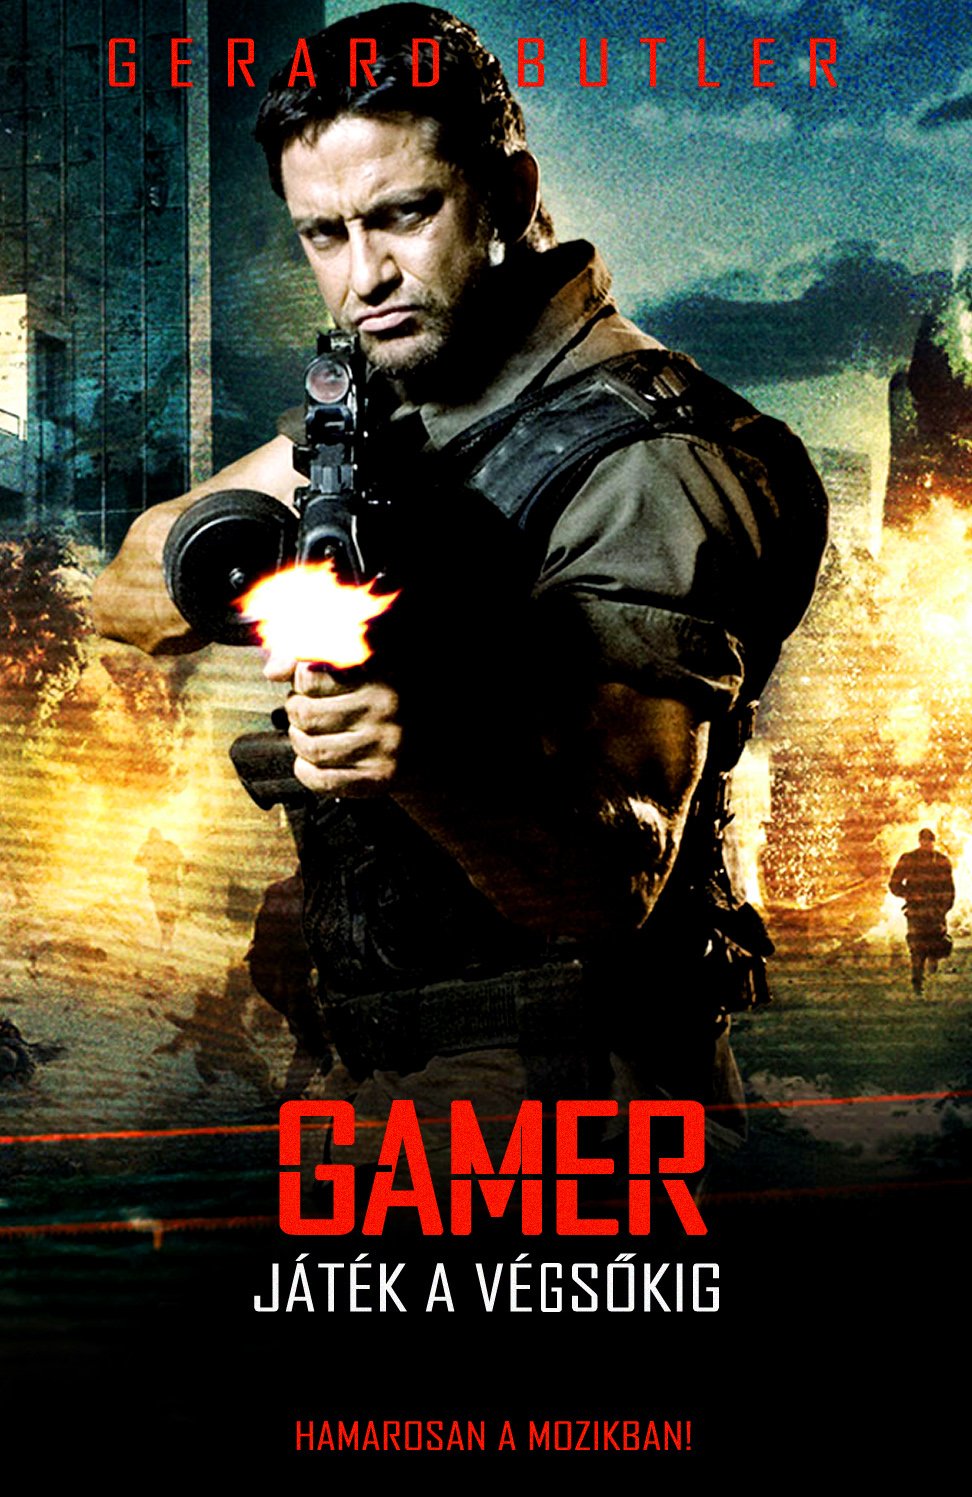 gamer_2009_3974_poster.jpg